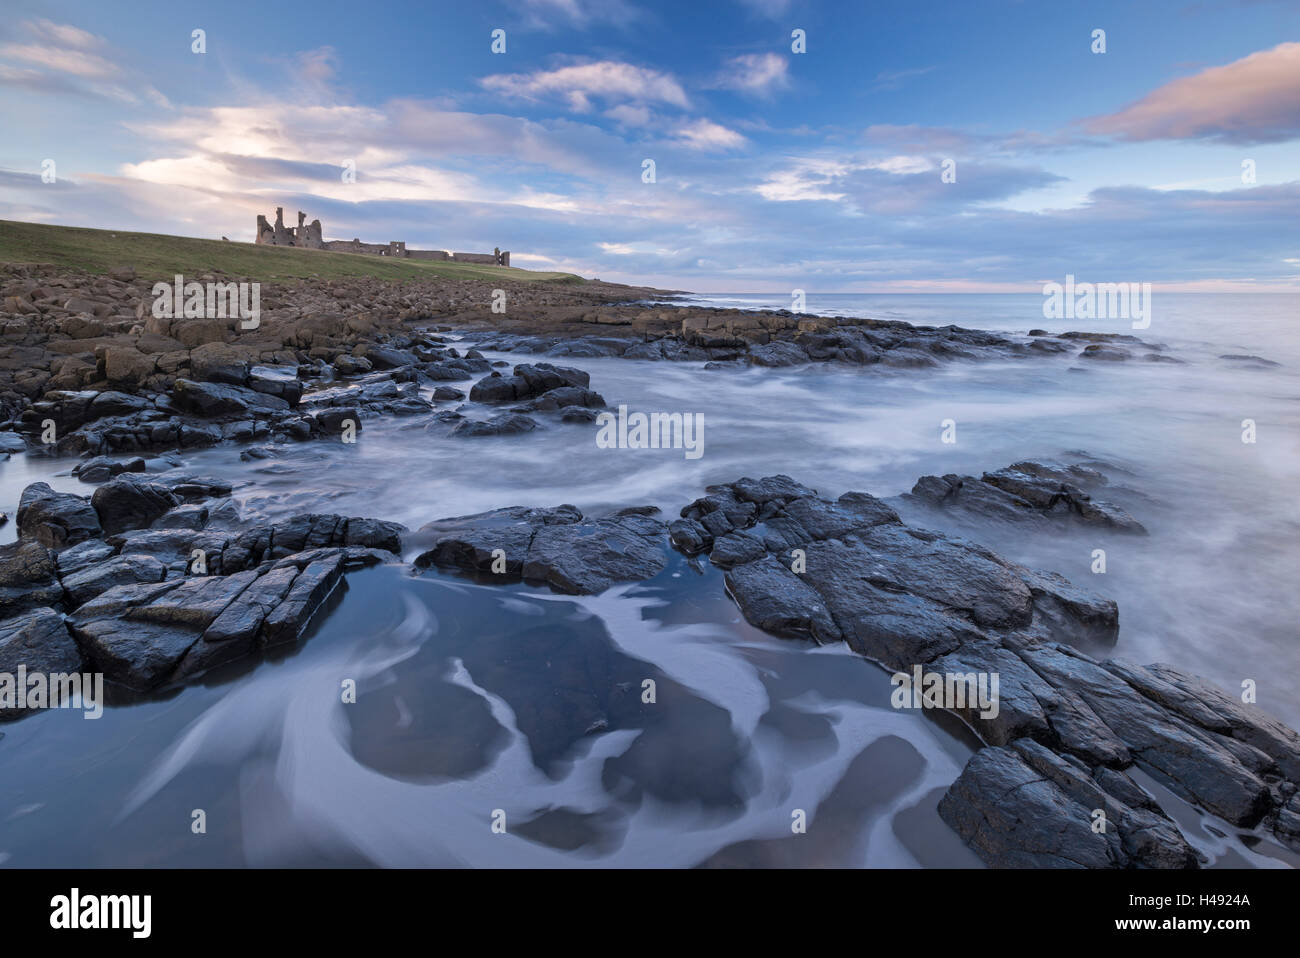 Les rivages rocheux ci-dessous château de Dunstanburgh, Craster, Northumberland, Angleterre. Printemps (mars) 2014. Banque D'Images